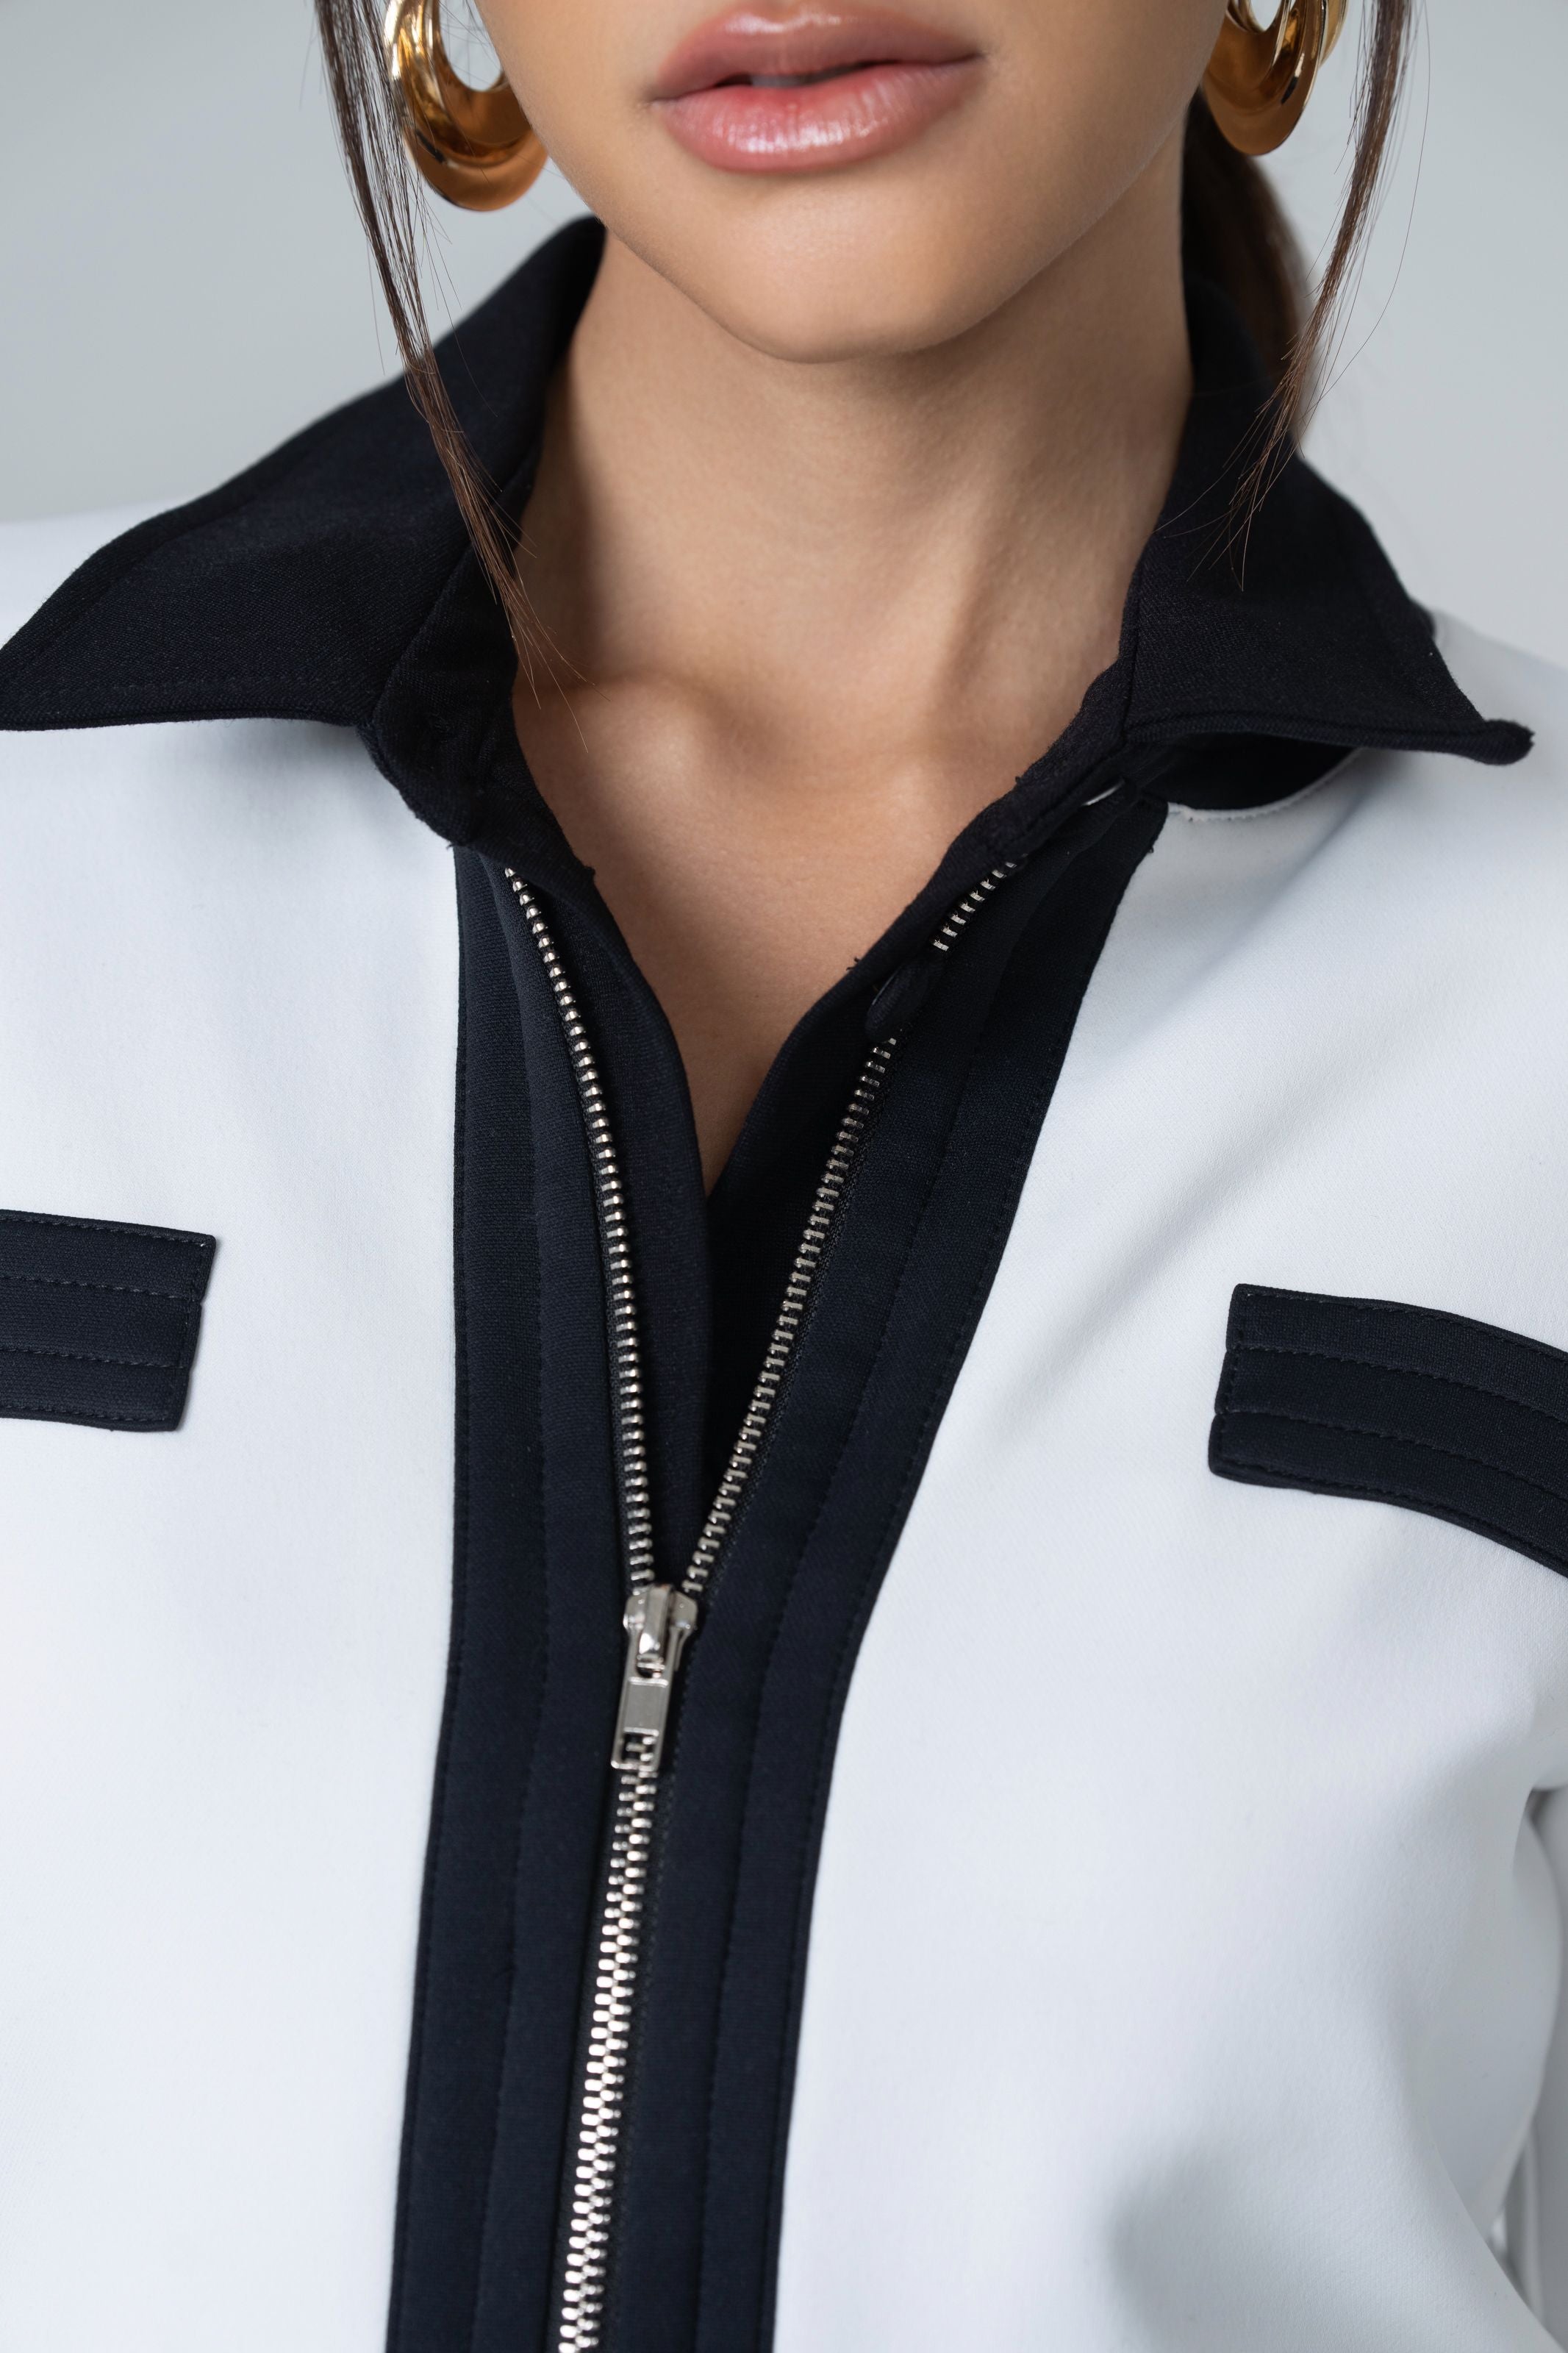 Cropped Bolero Zipper Jacket - White and Black - Olivvi World